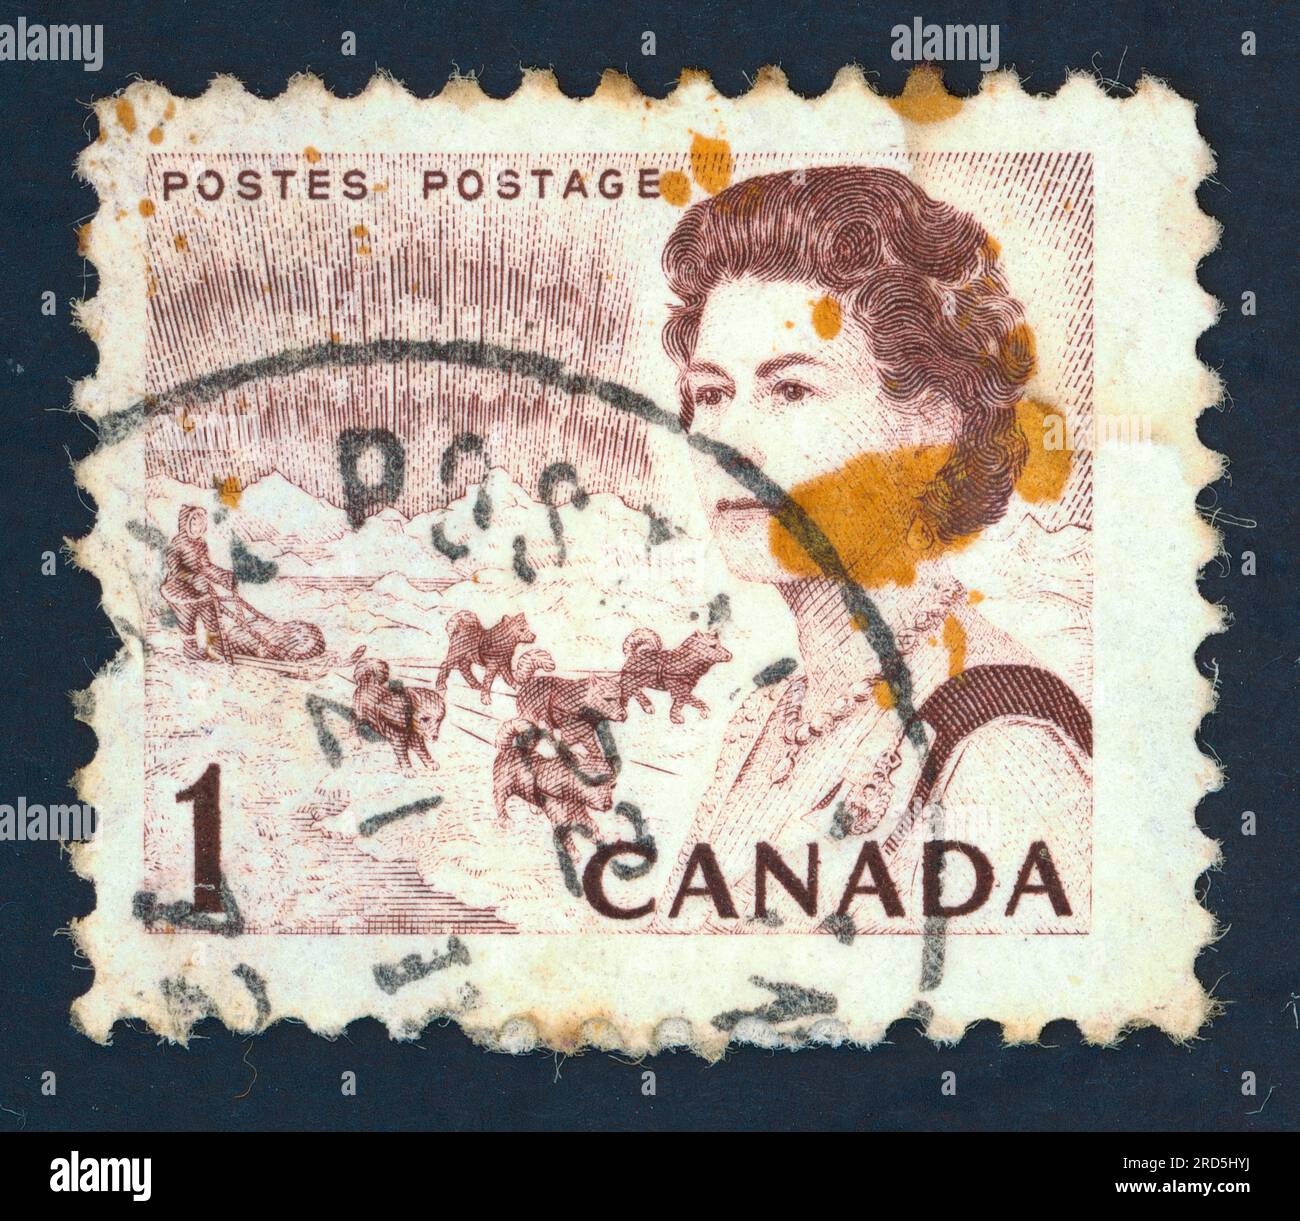 Reine Elizabeth II Timbre-poste émis au Canada dans les années 1960 Banque D'Images